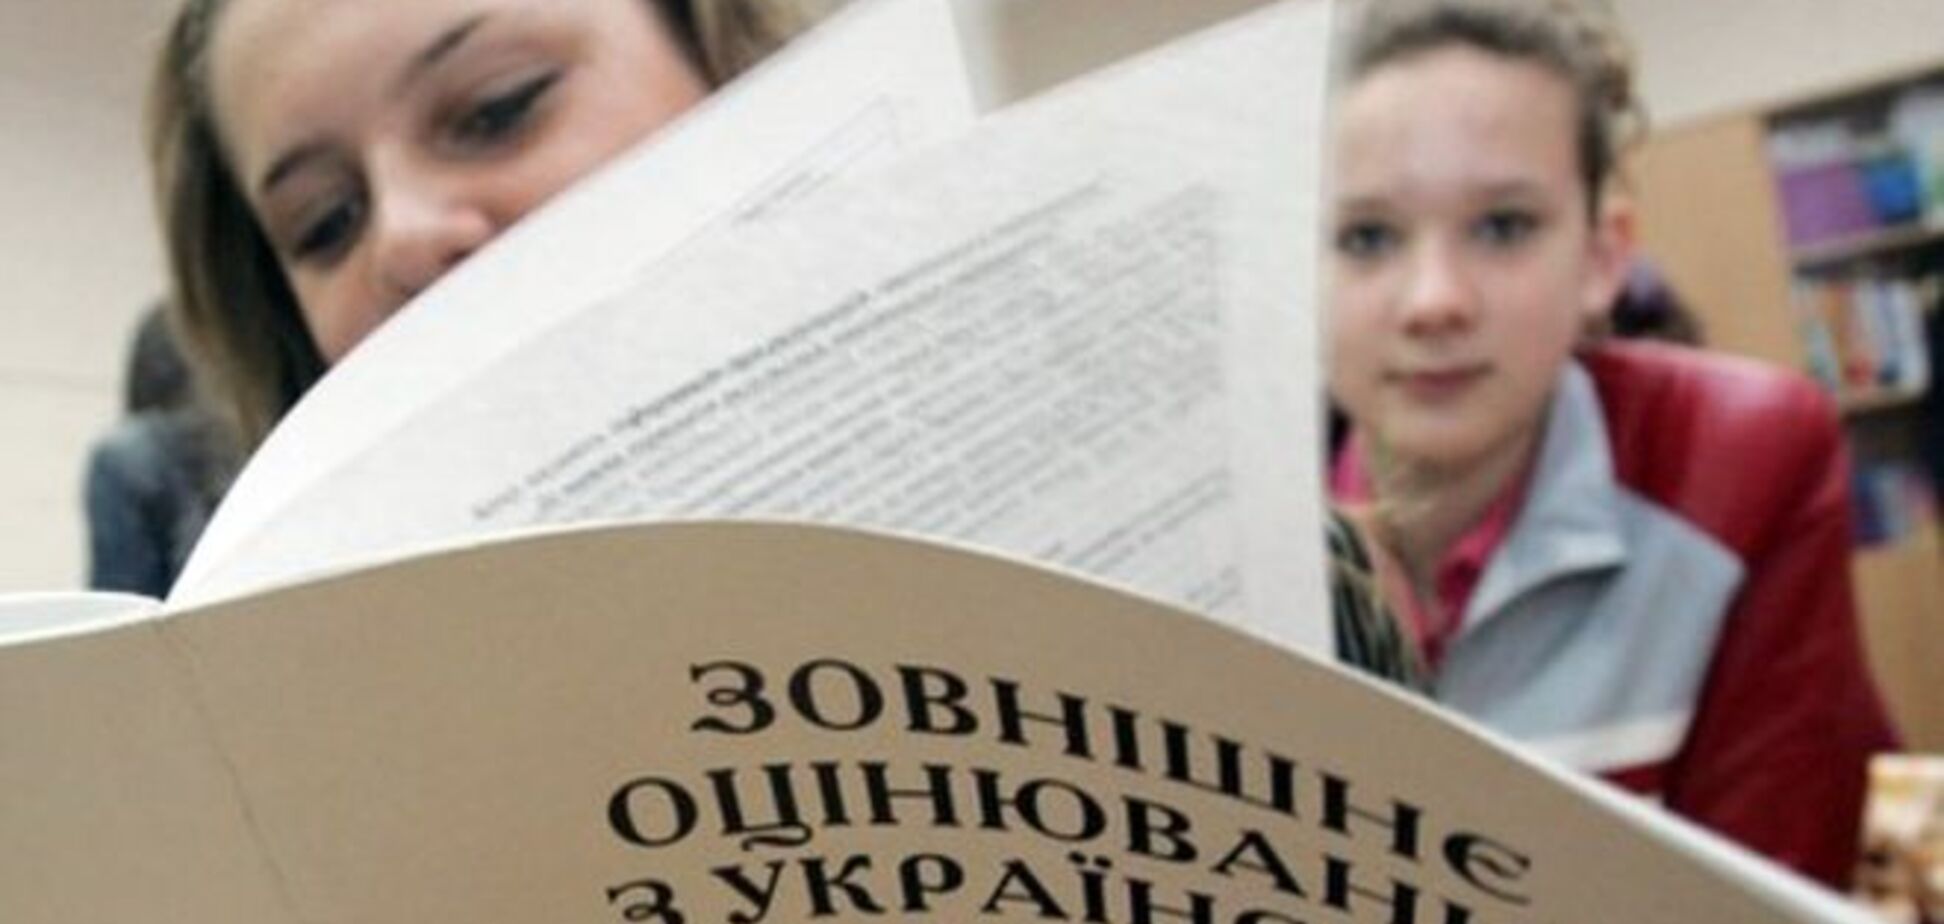 'Чужой идиотизм!' Родители украинских школьников устроили спор из-за ВНО